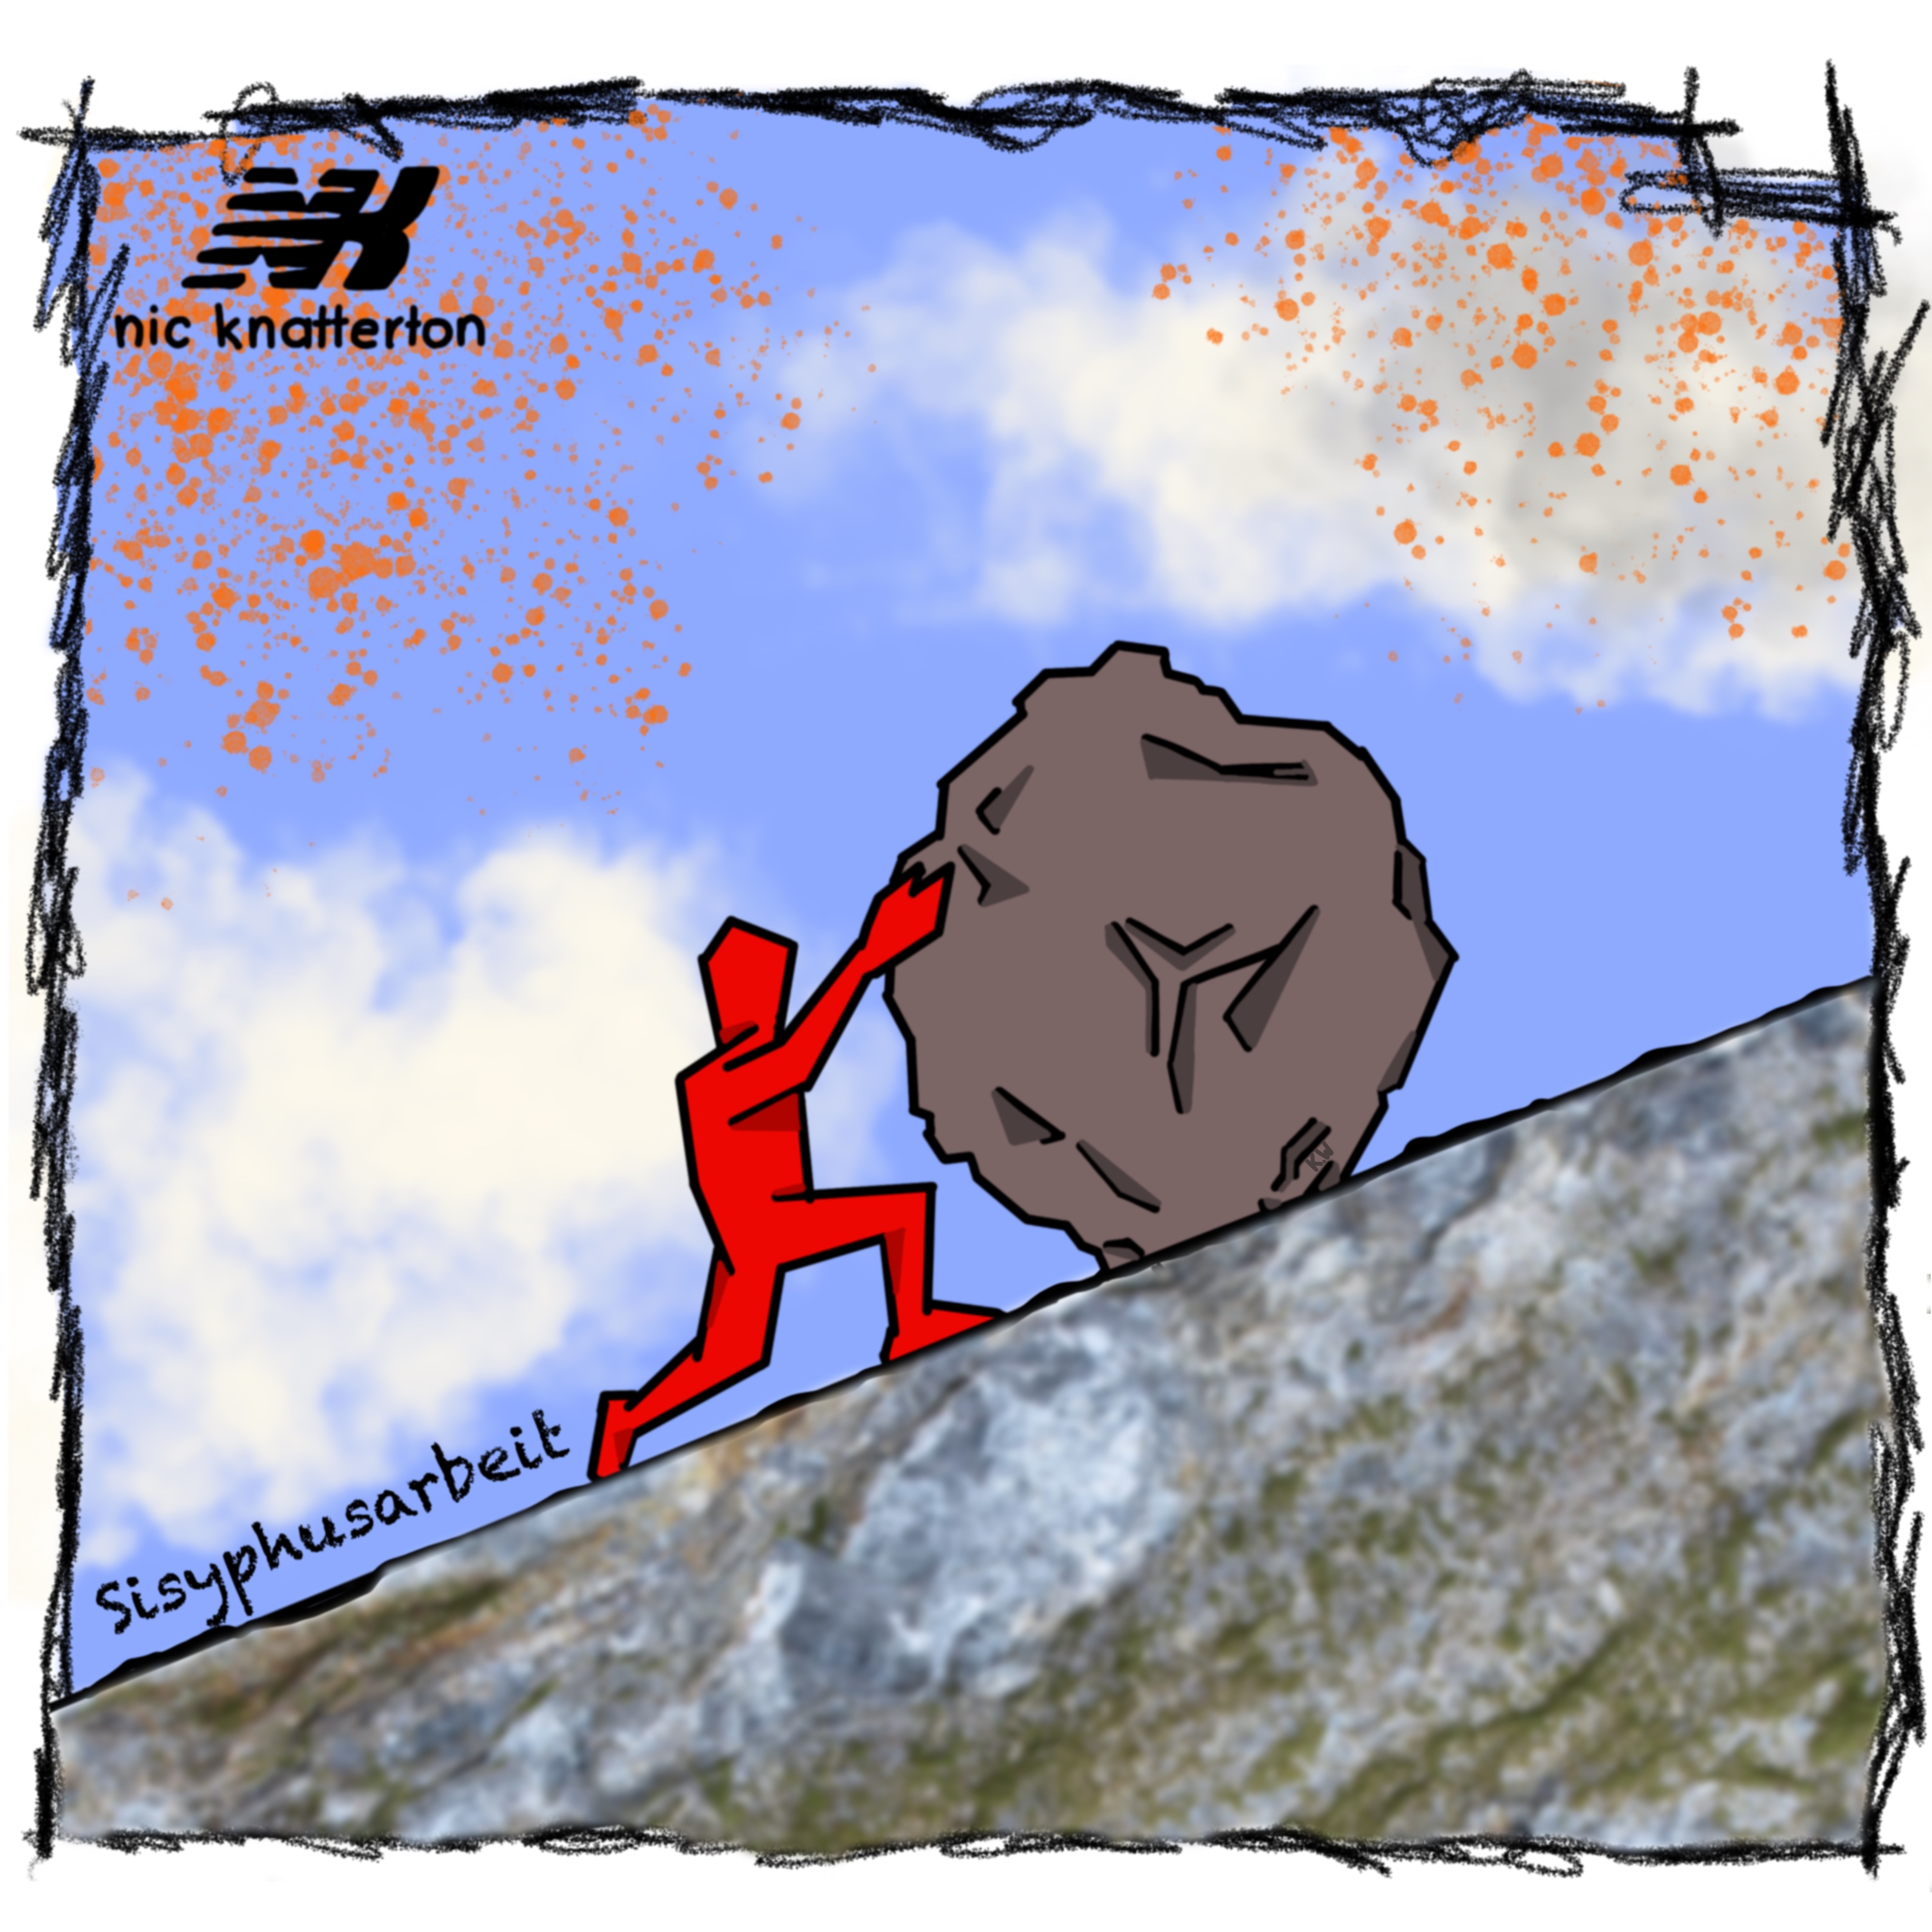 Sisyphusarbeit